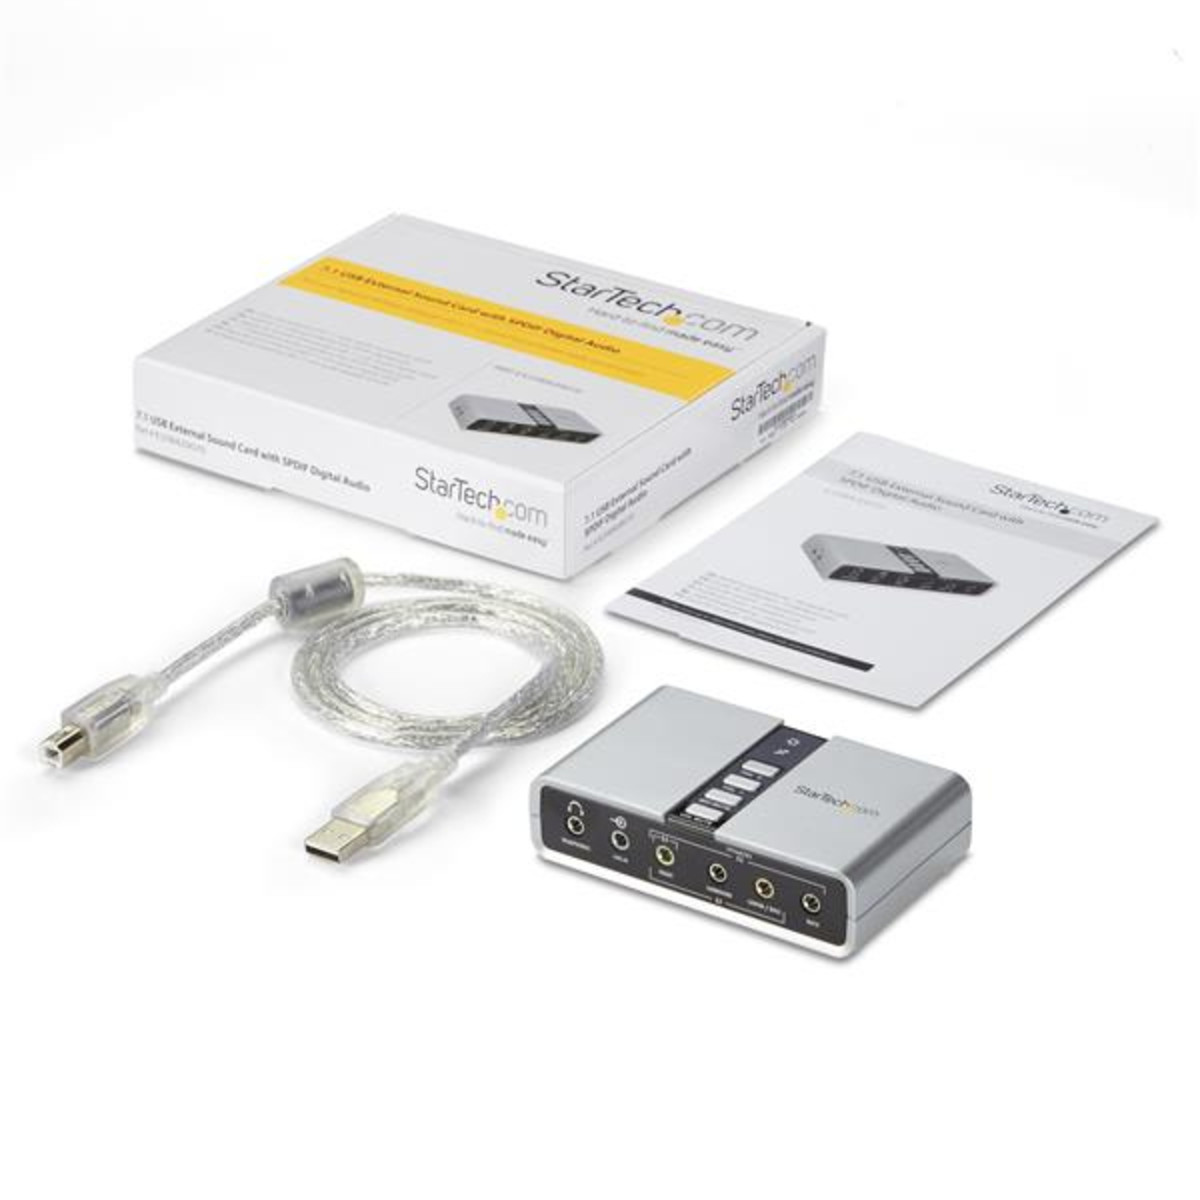 USB Audio Adapter External Sound Card